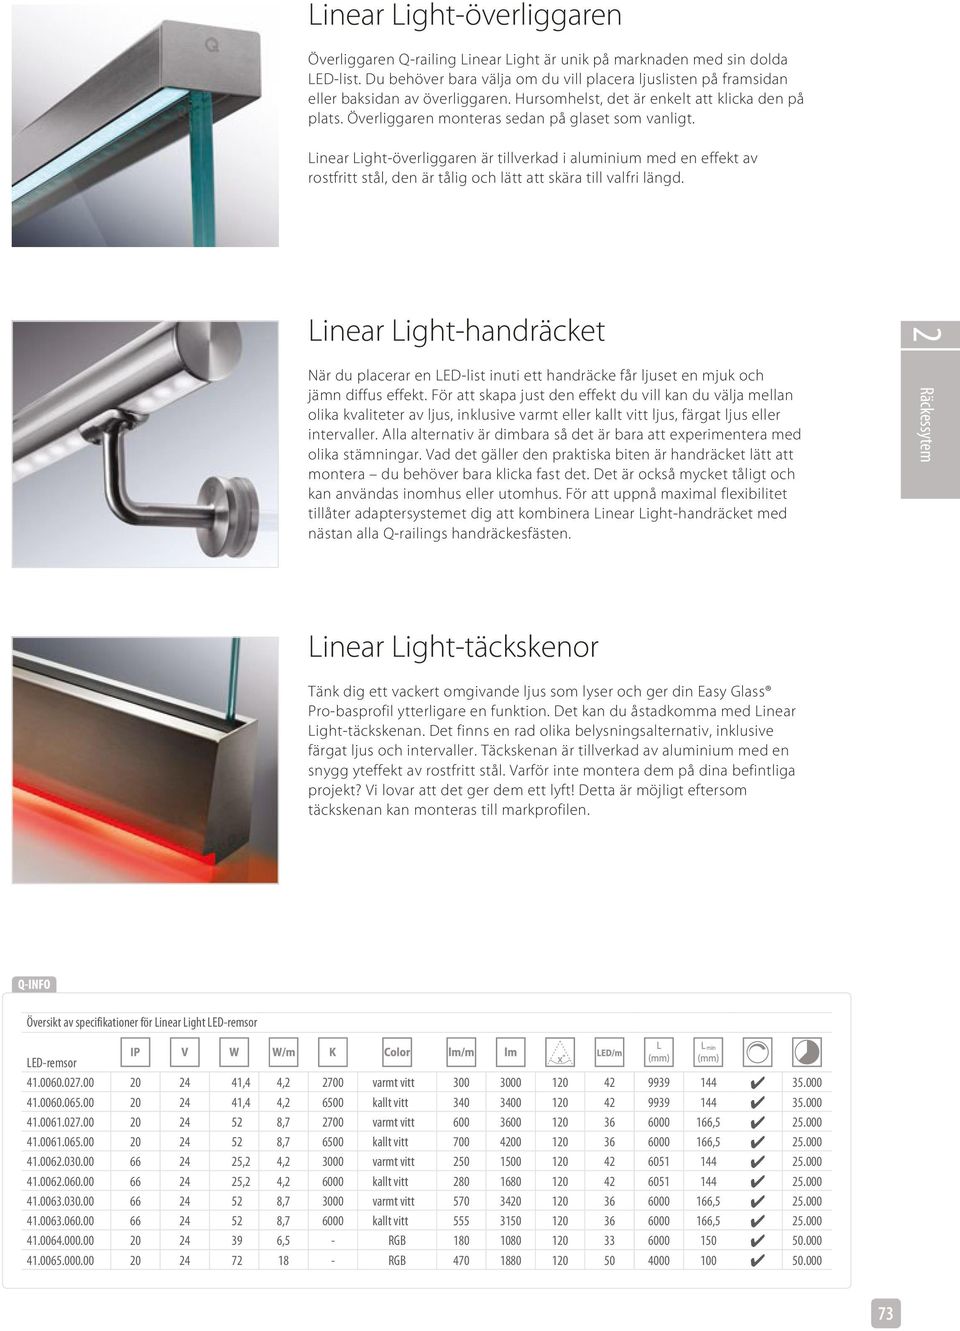 Linear Light-överliggaren är tillverkad i aluminium med en effekt av rostfritt stål, den är tålig och lätt att skära till valfri längd.